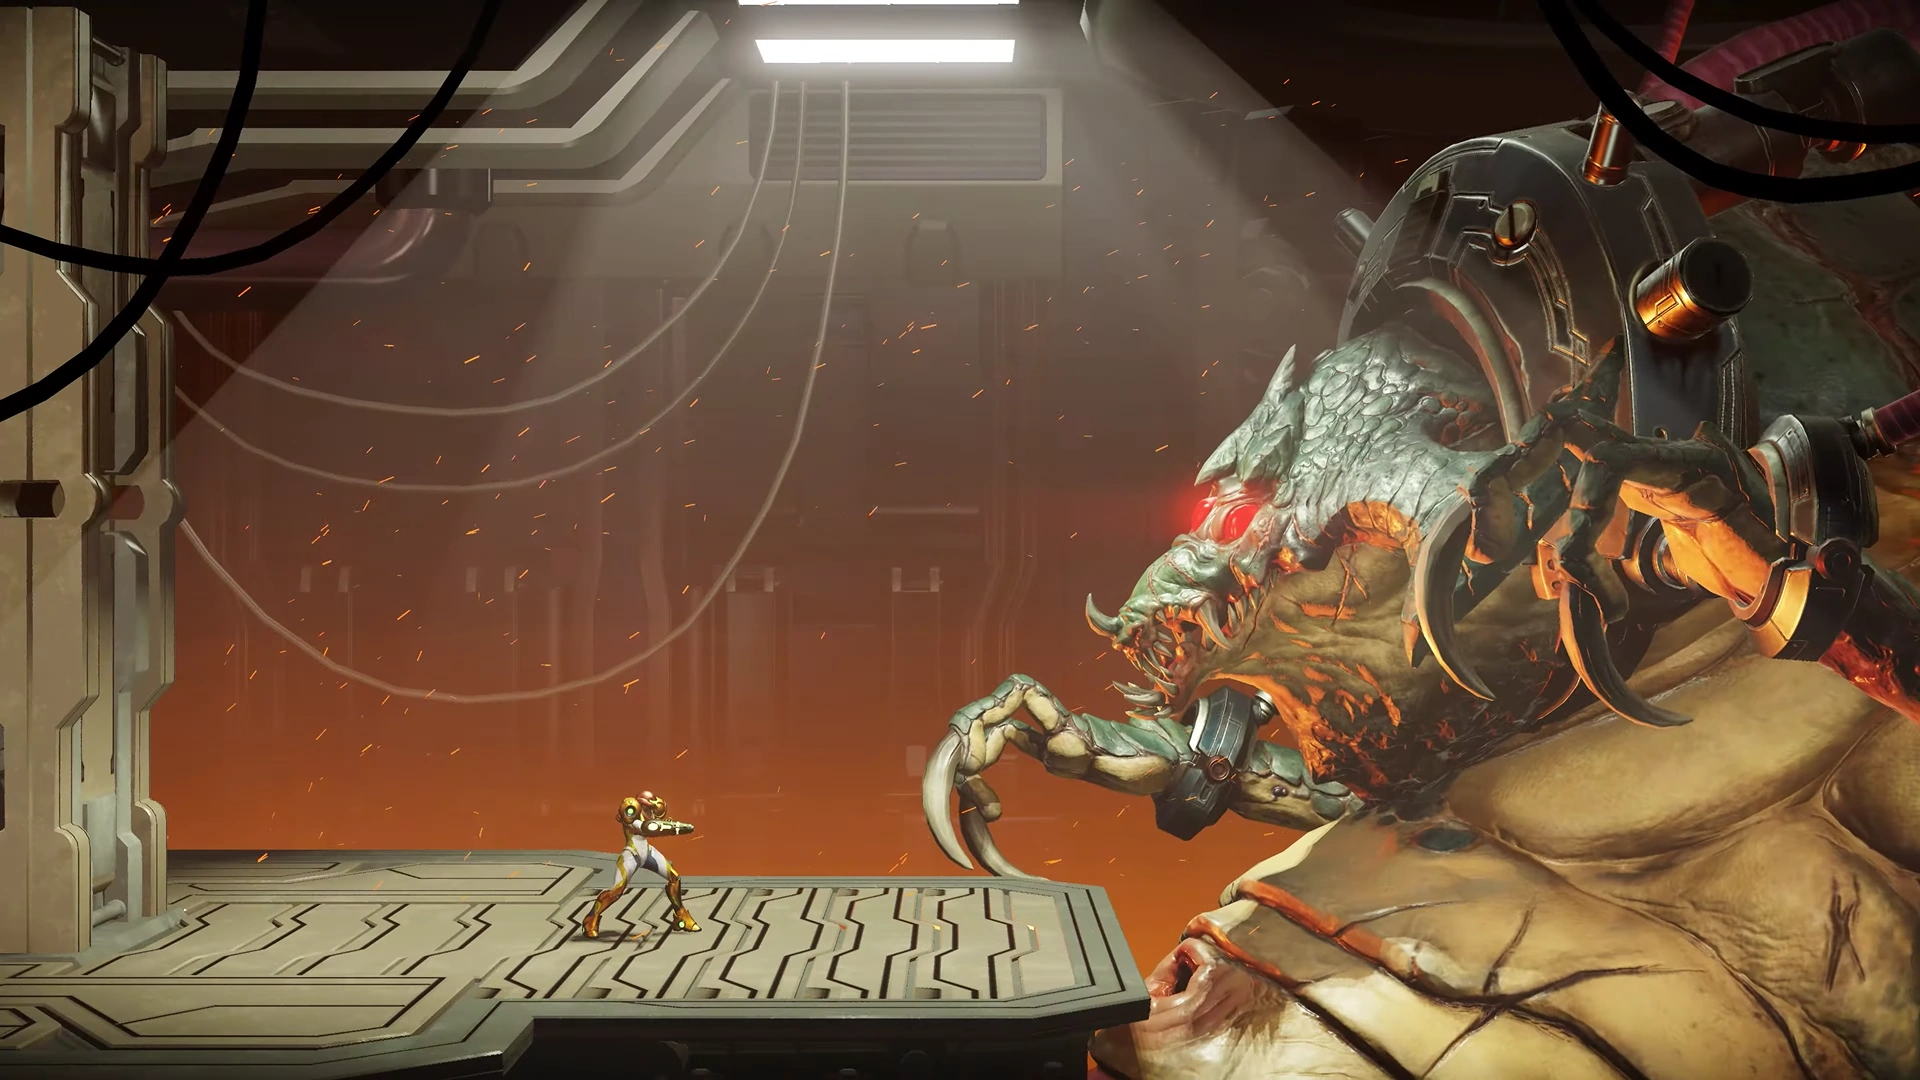 Captura do Metroid Dread nun enfrontamento com um xefe. Nunha sala con lava por baixo, á esquerda está Samus e á dereita um monstro enorme en cadeas.